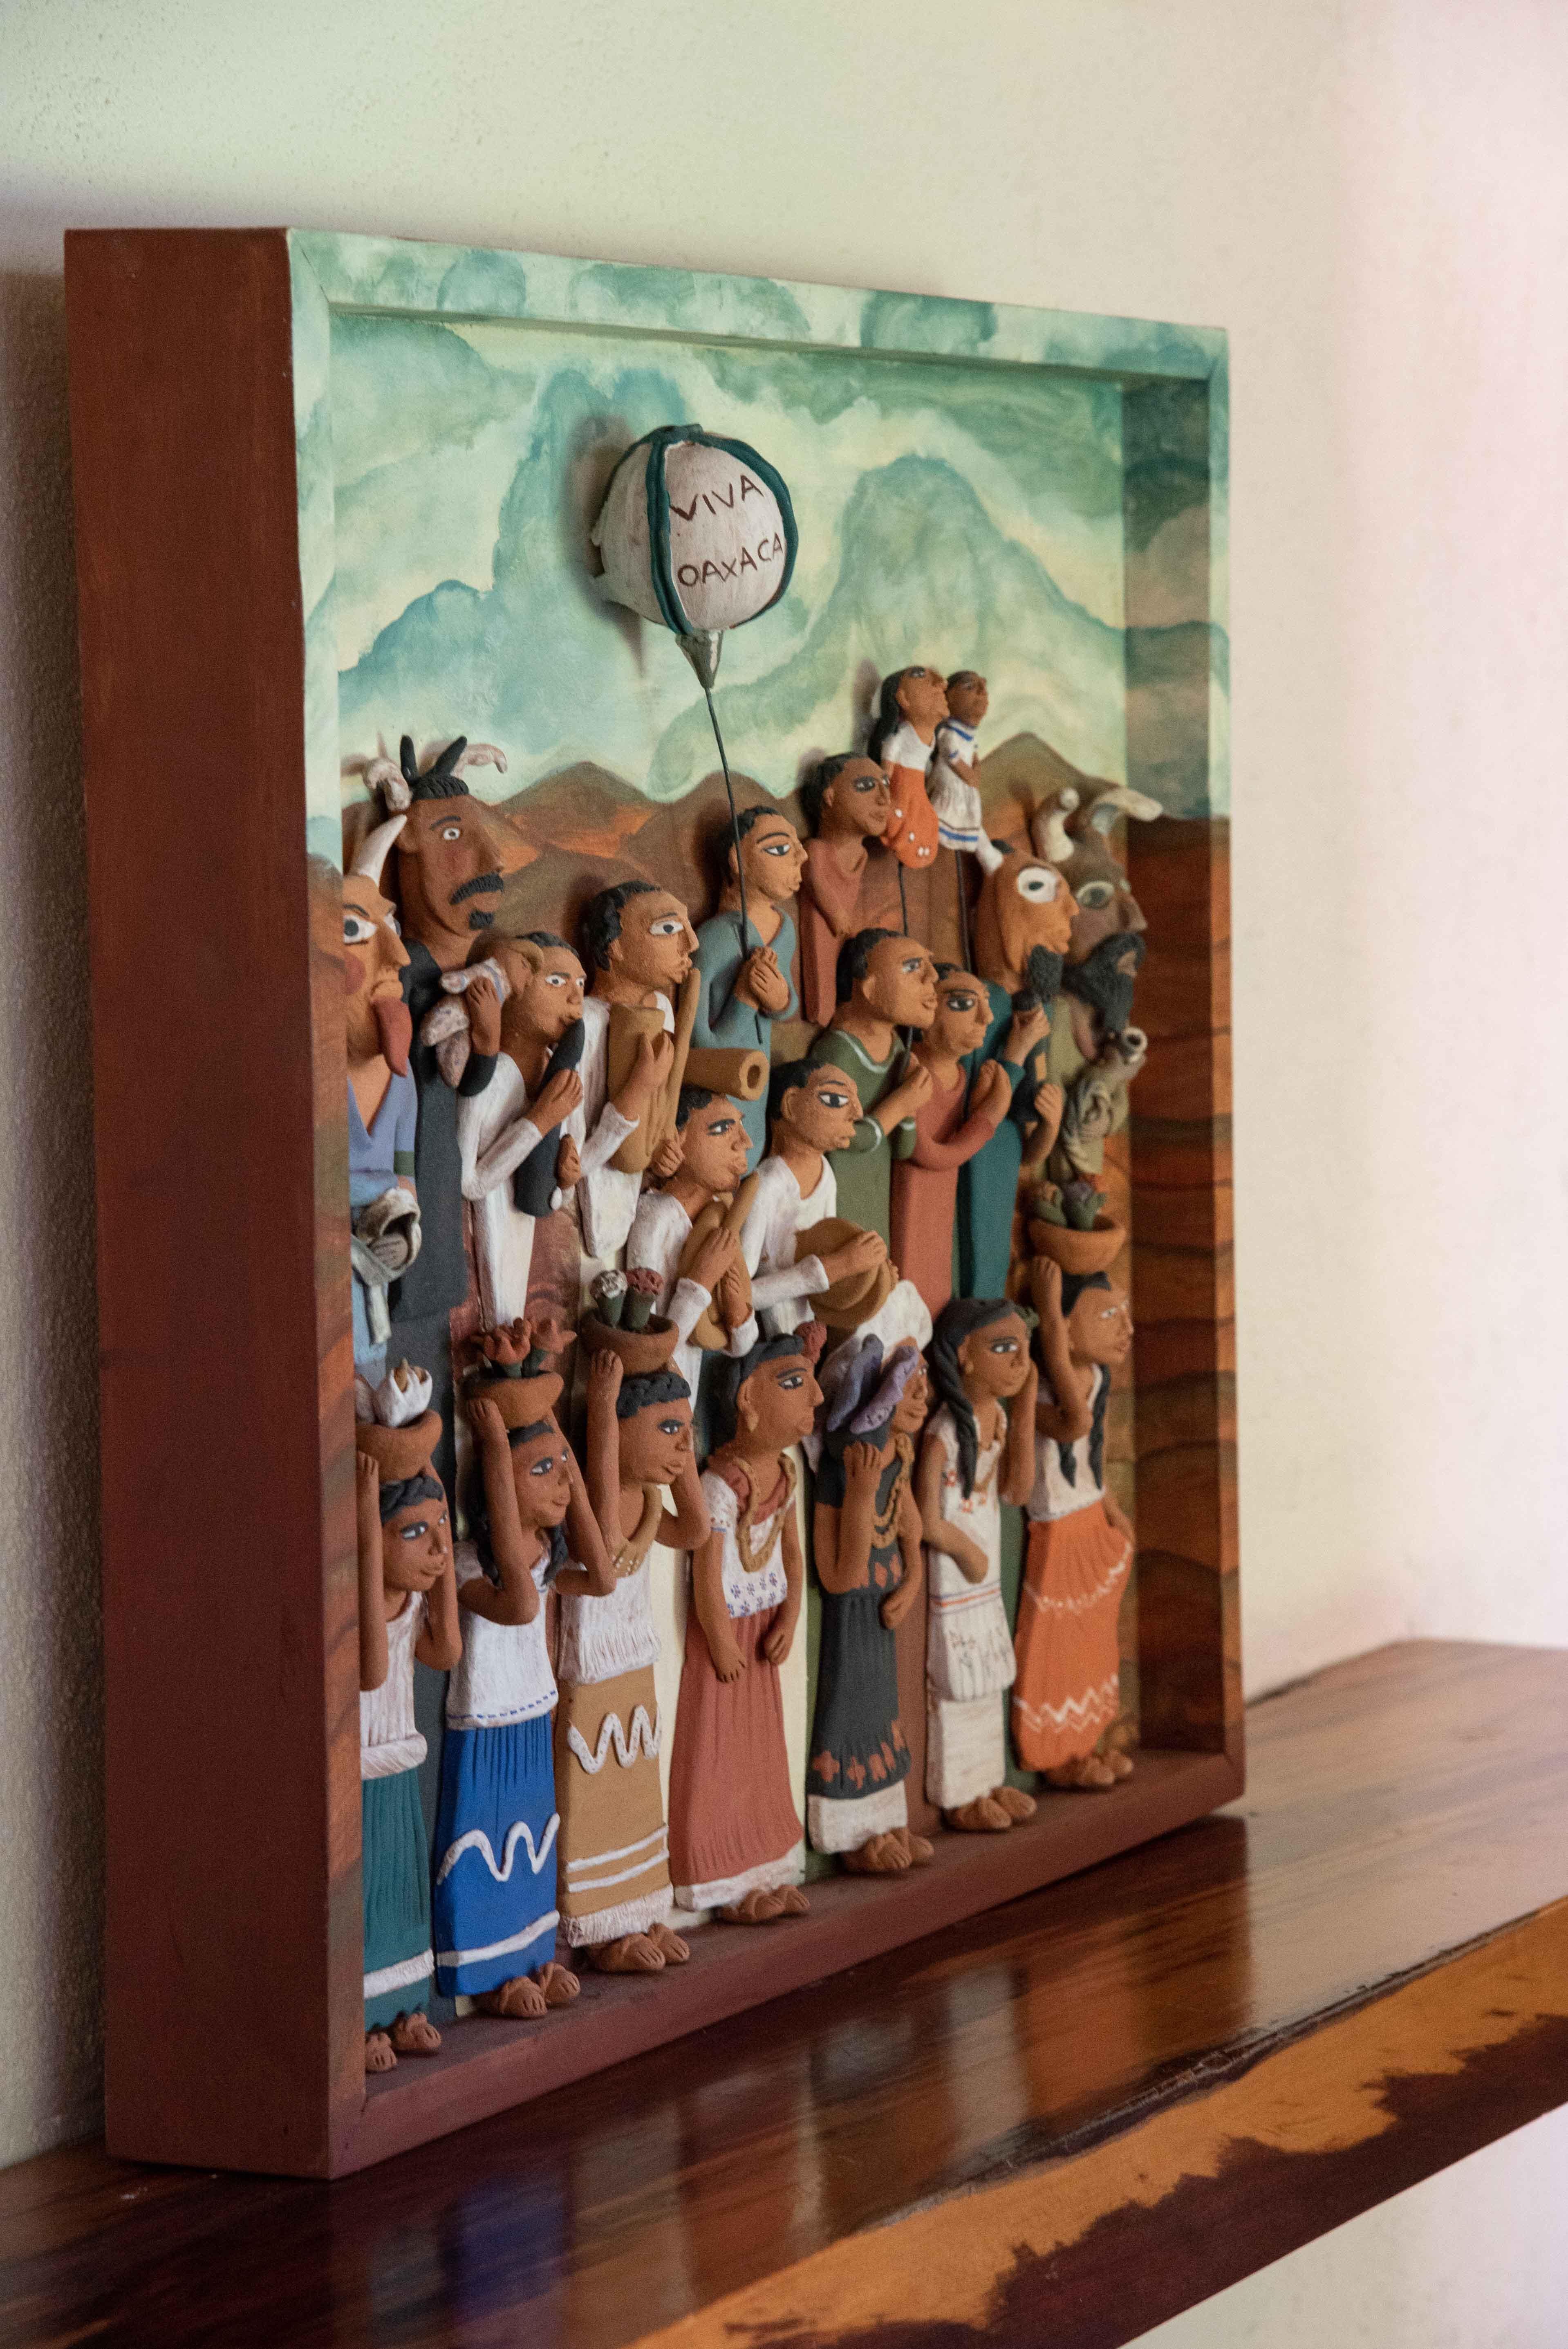 Dieses Volkskunstwerk ist eine schöne Darstellung des Candela-Festes in Yanhuitlan, Oaxaca. Ein folkloristischer Wandbehang, der Musiker, Tänzer und Traditionen darstellt. 

Der Künstler Manuel Reyes lebt in Yanhuitlan. Er stellt diese Arbeit aus